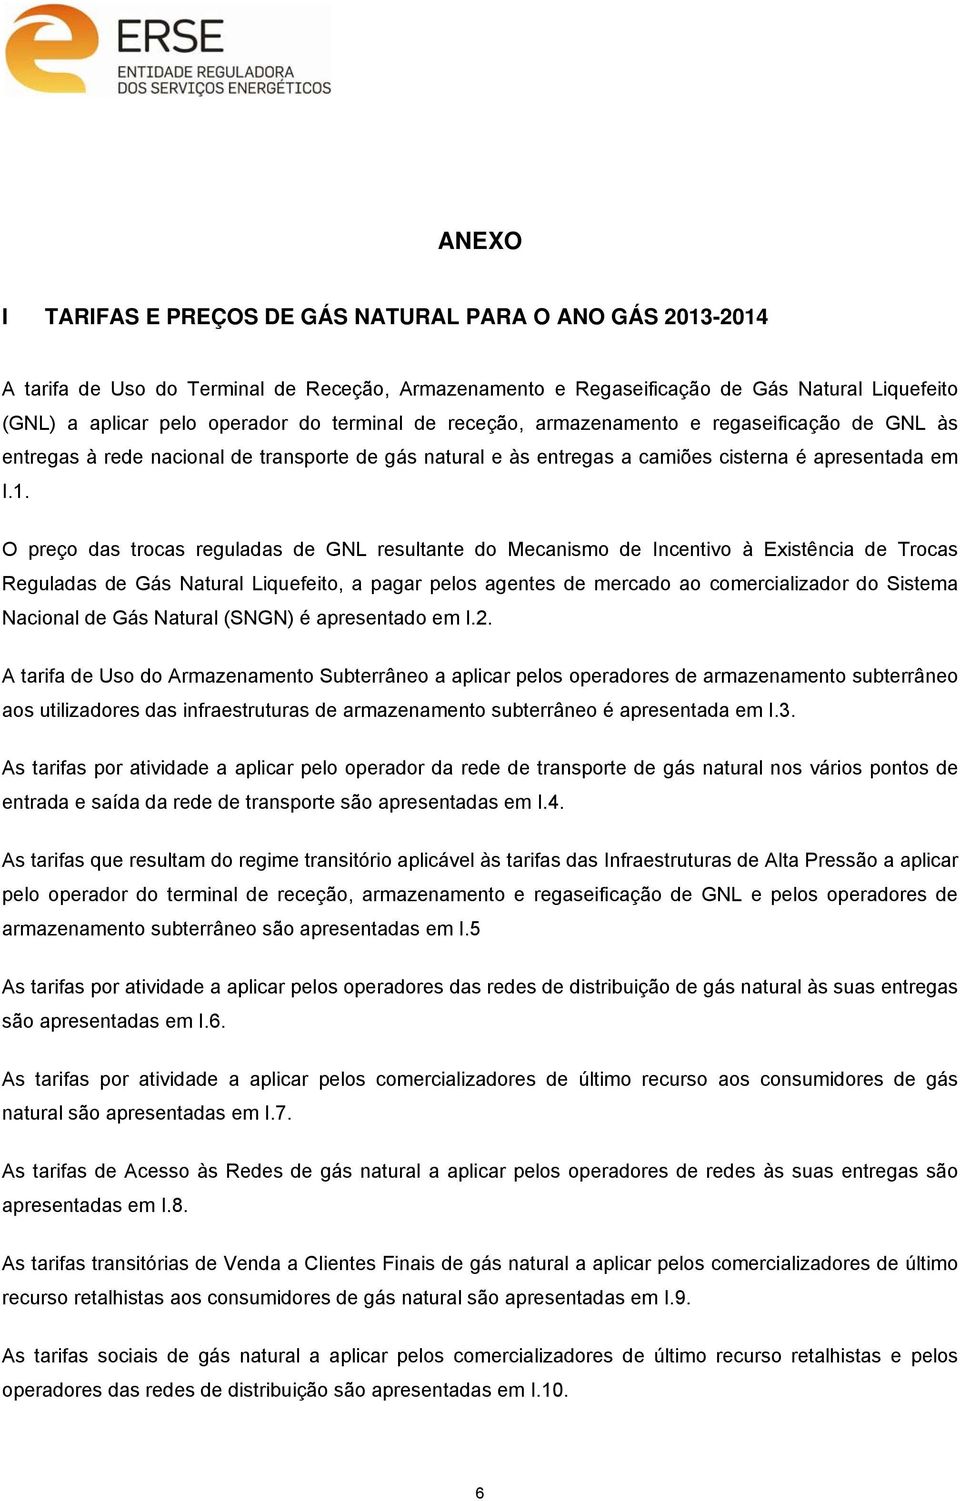 O preço das trocas reguladas de GNL resultante do Mecanismo de Incentivo à Existência de Trocas Reguladas de Gás Natural Liquefeito, a pagar pelos agentes de mercado ao comercializador do Sistema